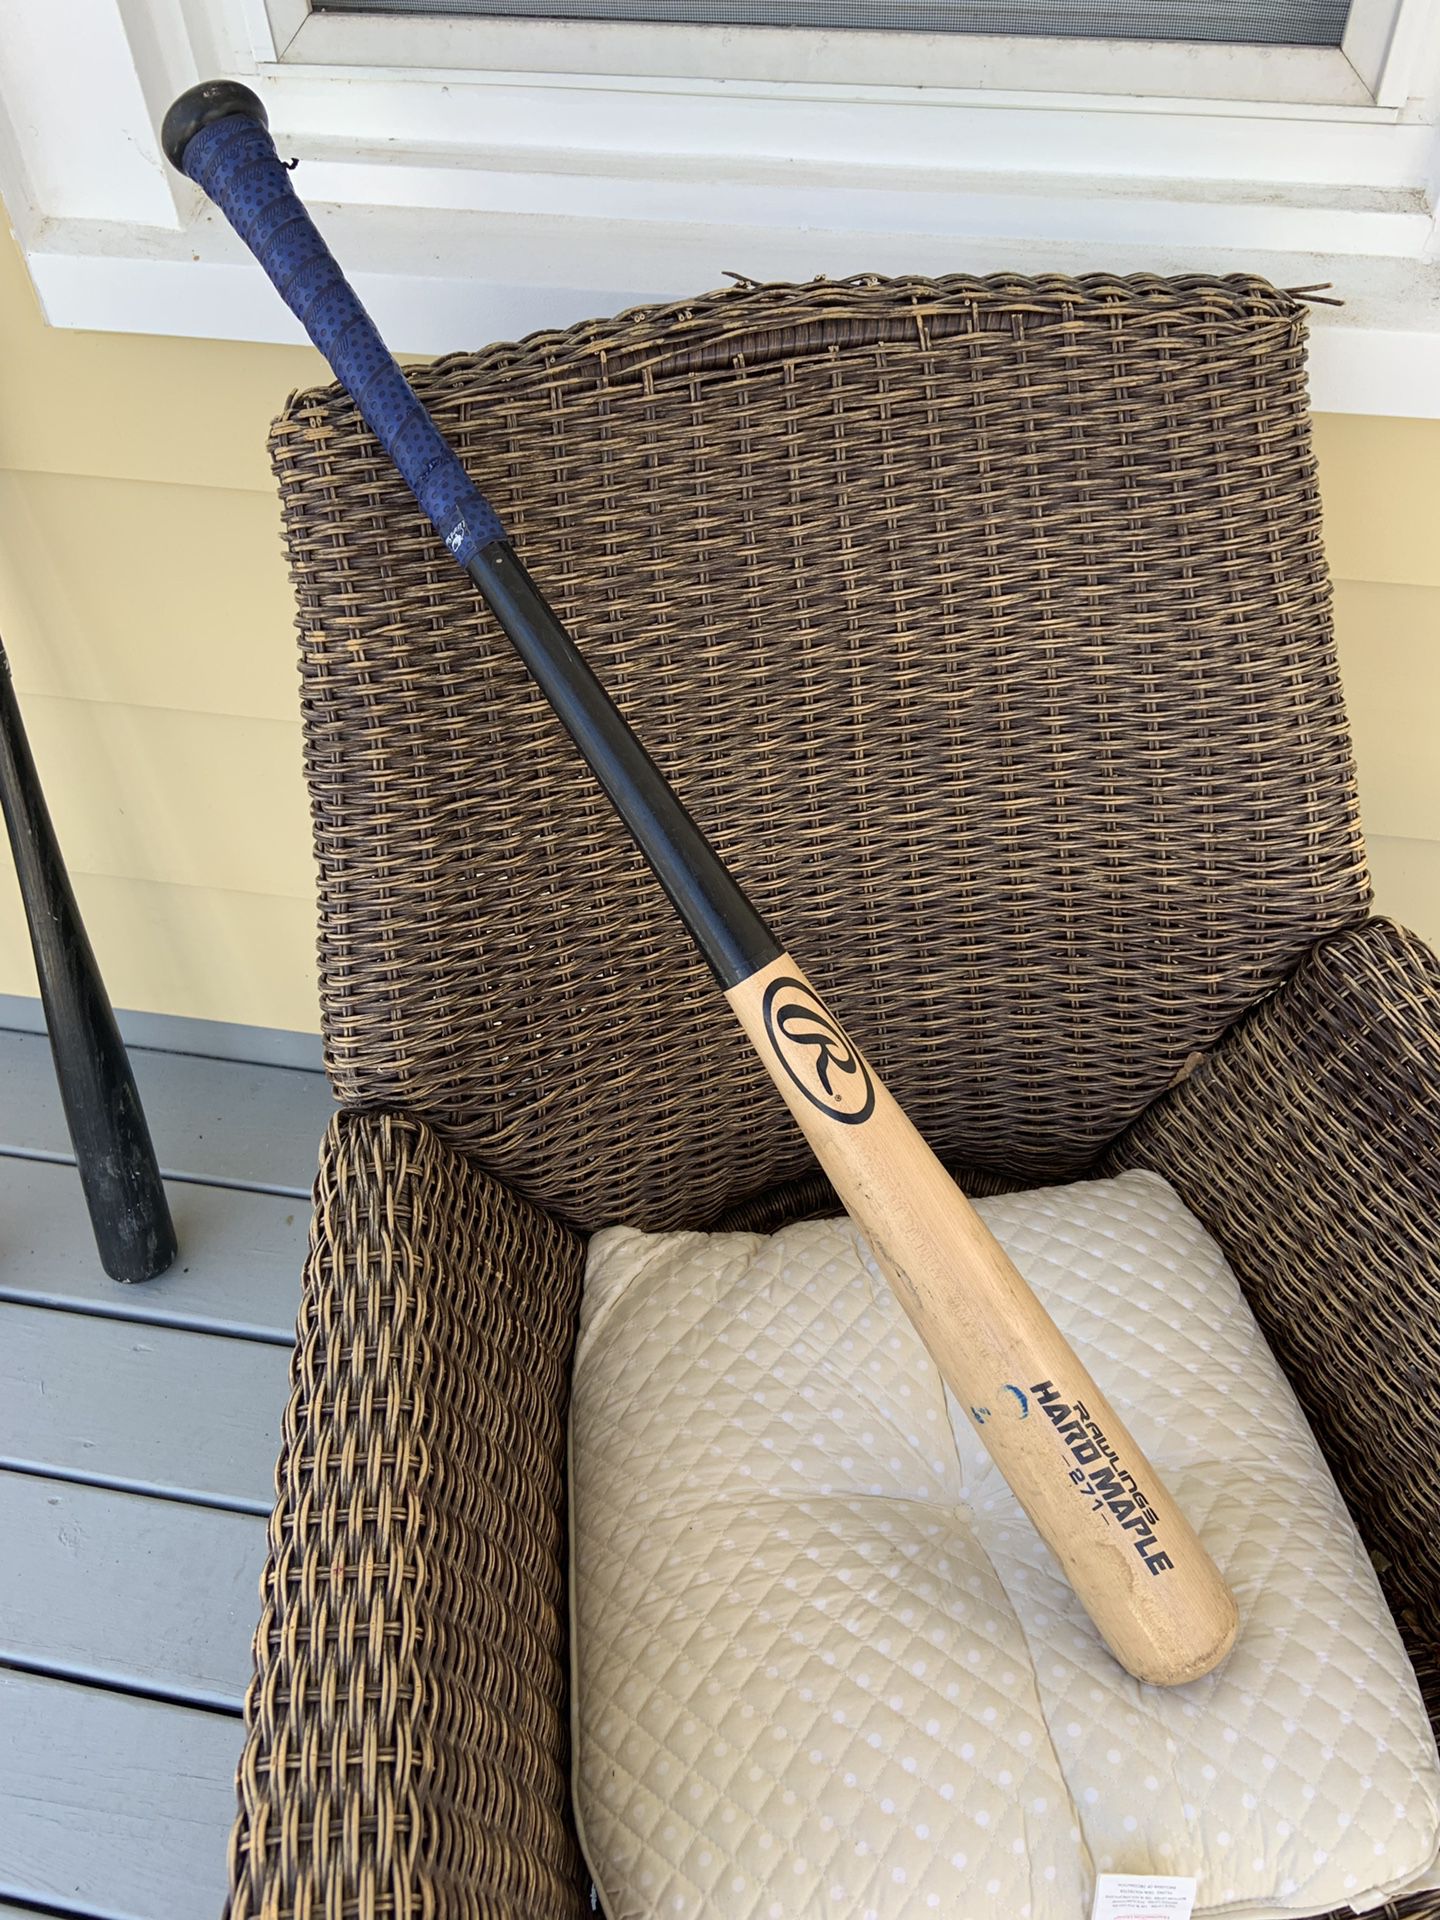 Rawlings Hard Maple 271 wood baseball bat